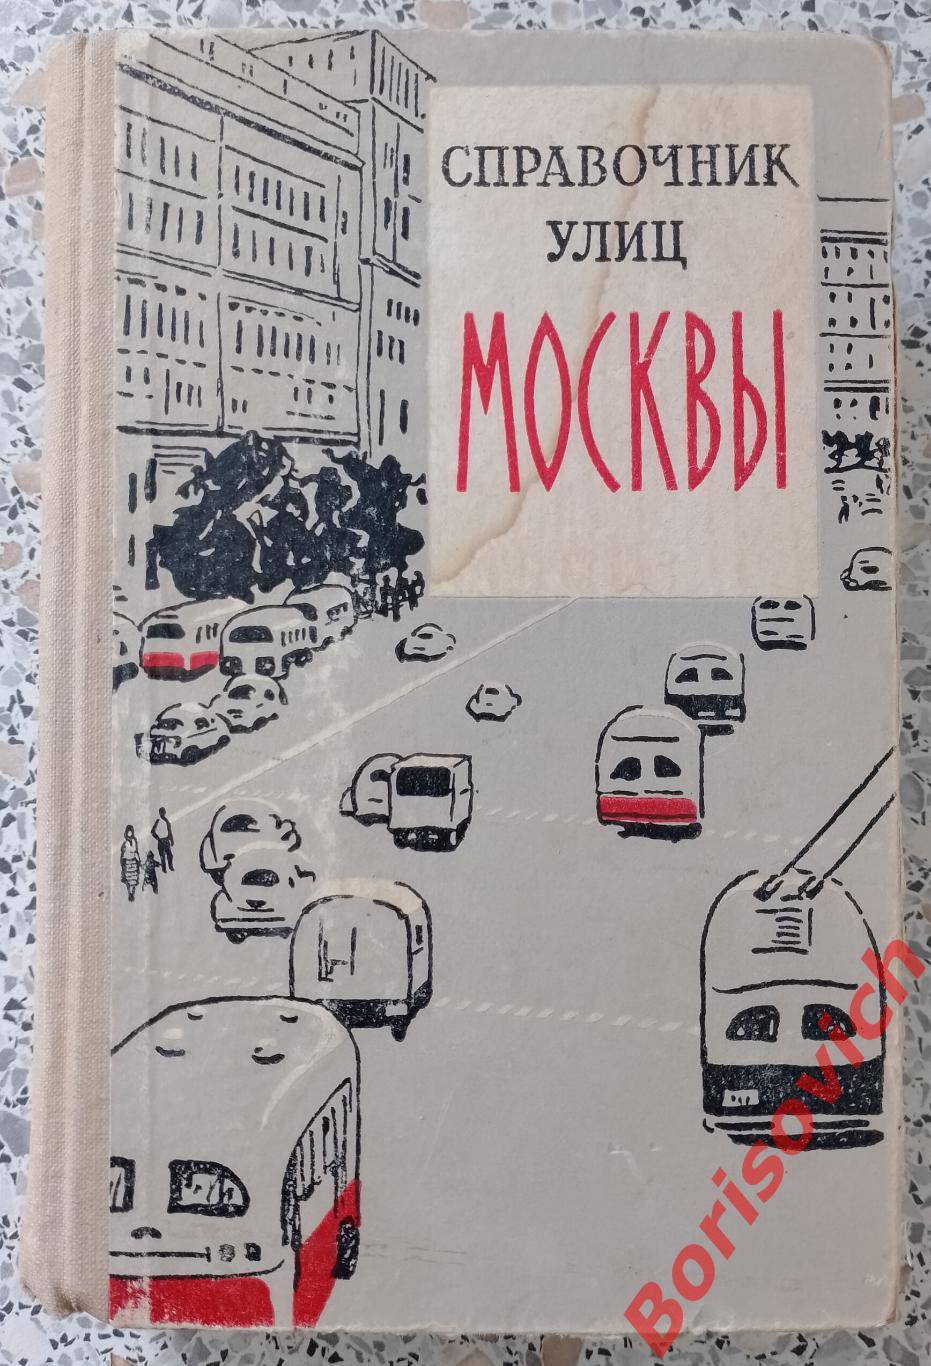 Справочник улиц МОСКВЫ 1959 г496 страниц